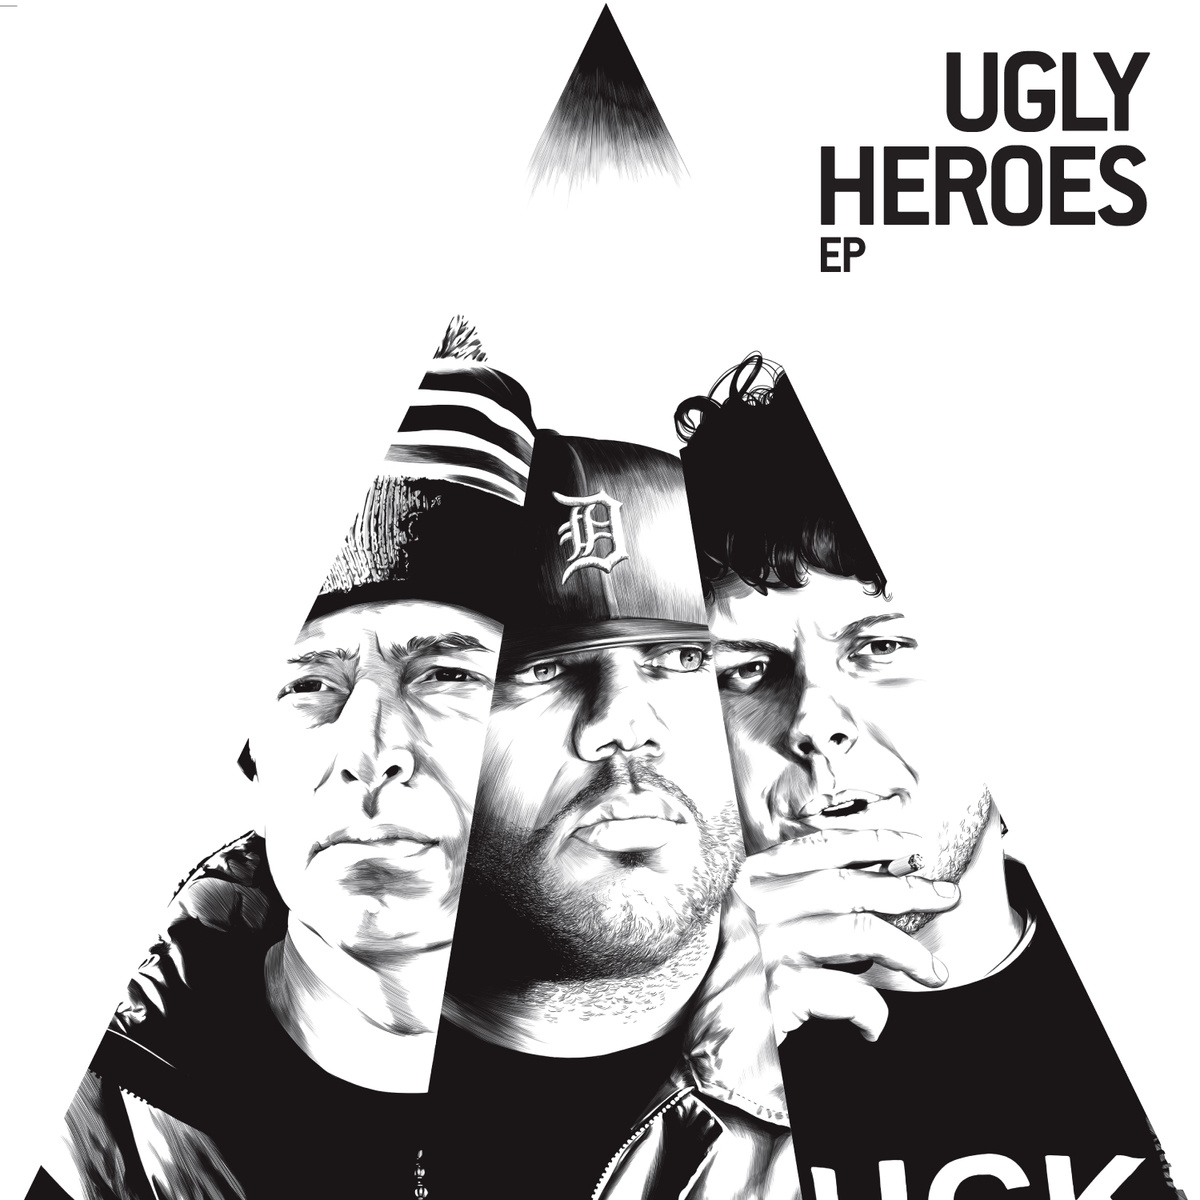 Ugly_heroes_-_ugly_heroes_ep